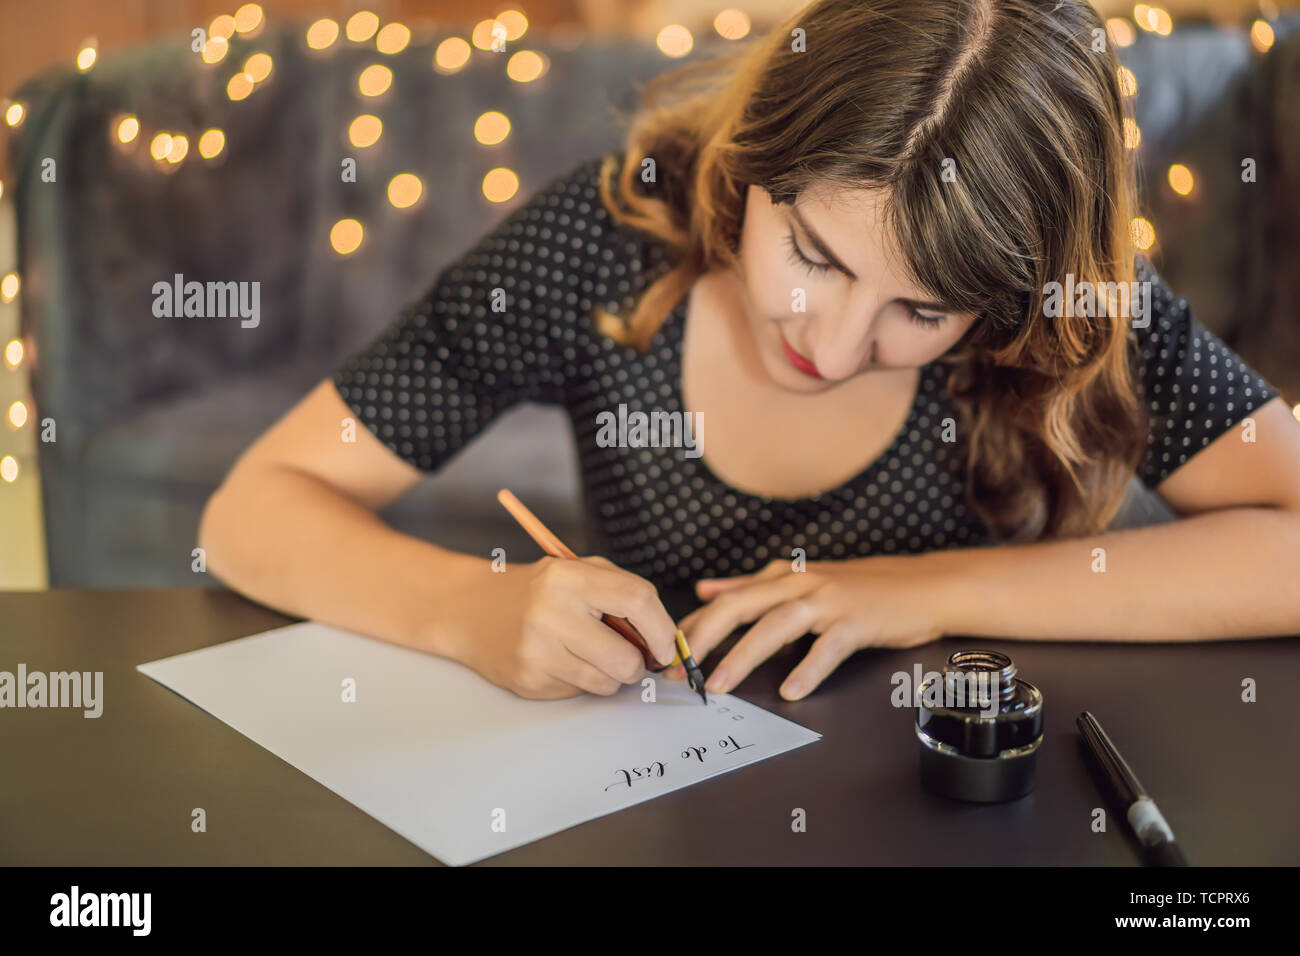 Elenco di cose da fare. Calligrapher giovane donna scrive una frase sul libro bianco. Inscrivendo ornamentali in lettere decorate. La calligrafia, graphic design, scritte Foto Stock